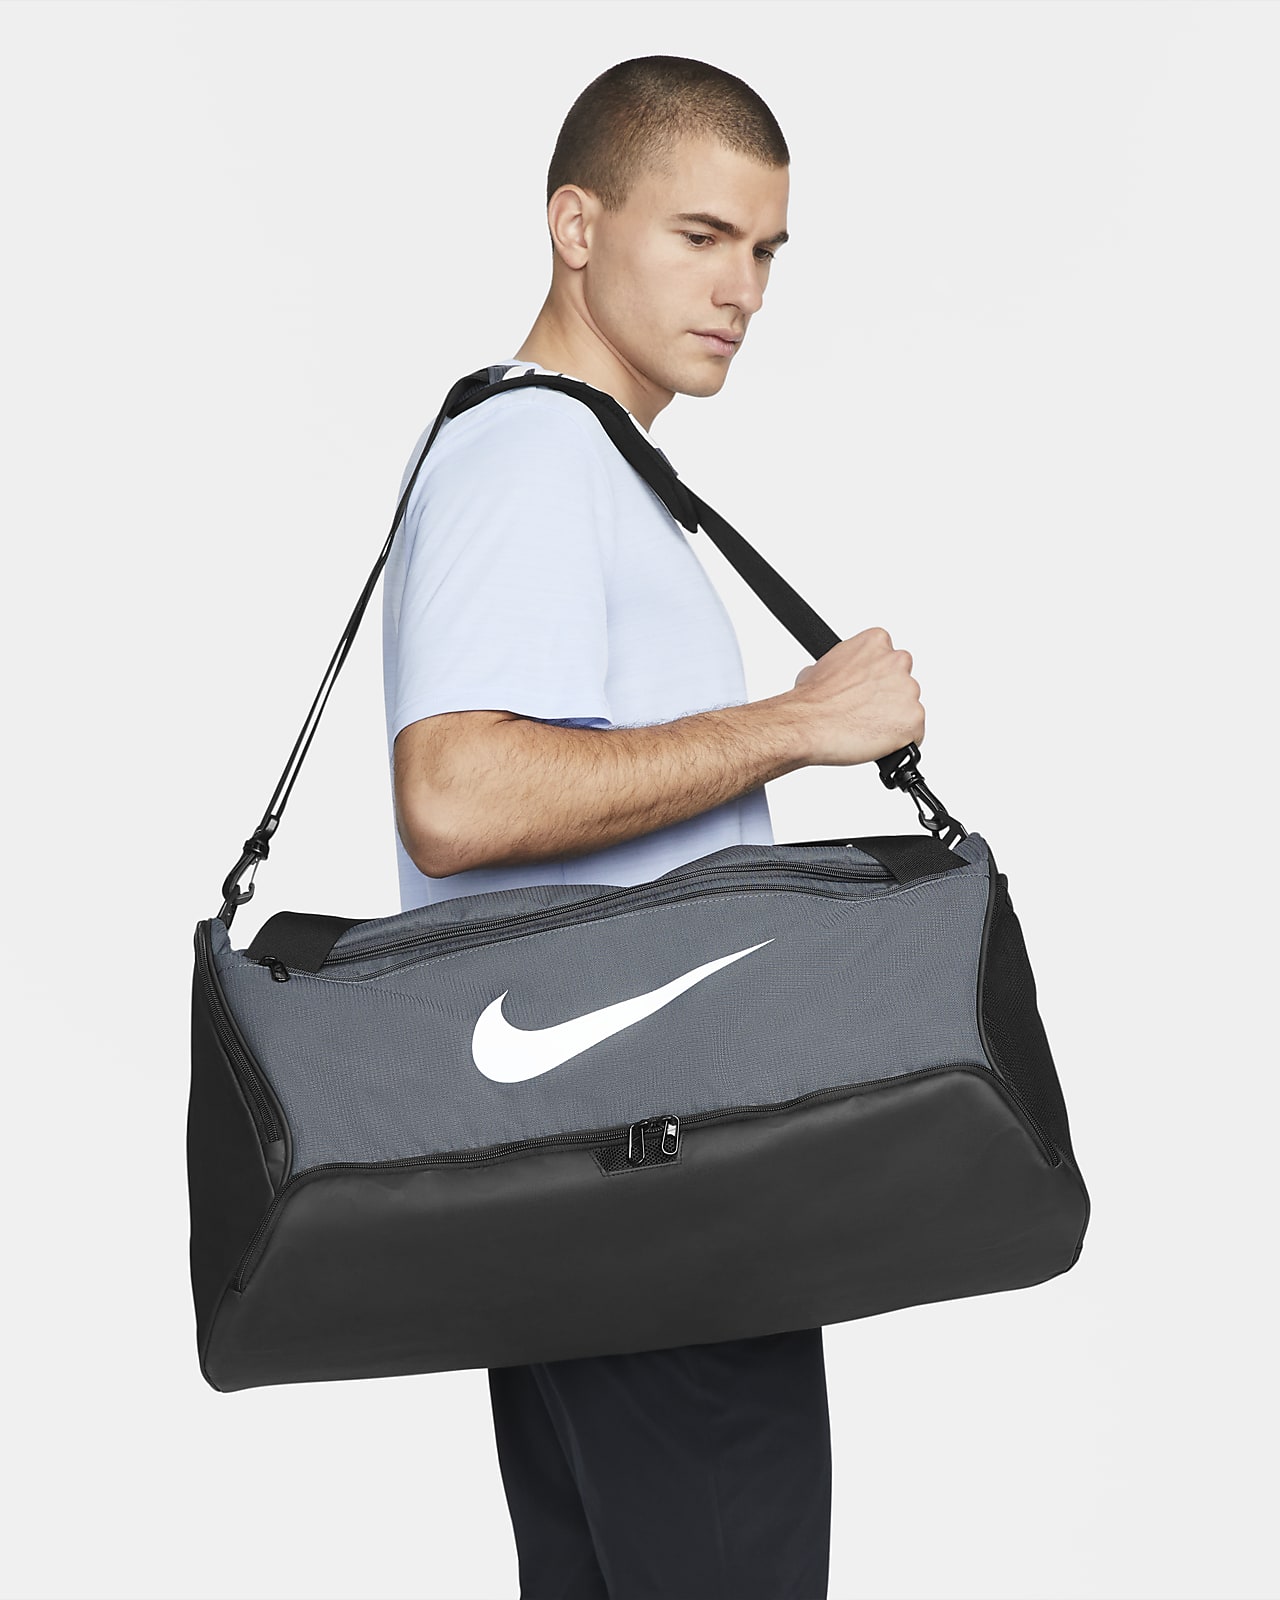 Tréninková sportovní taška Nike Brasilia 9.5 (střední, 60 l)